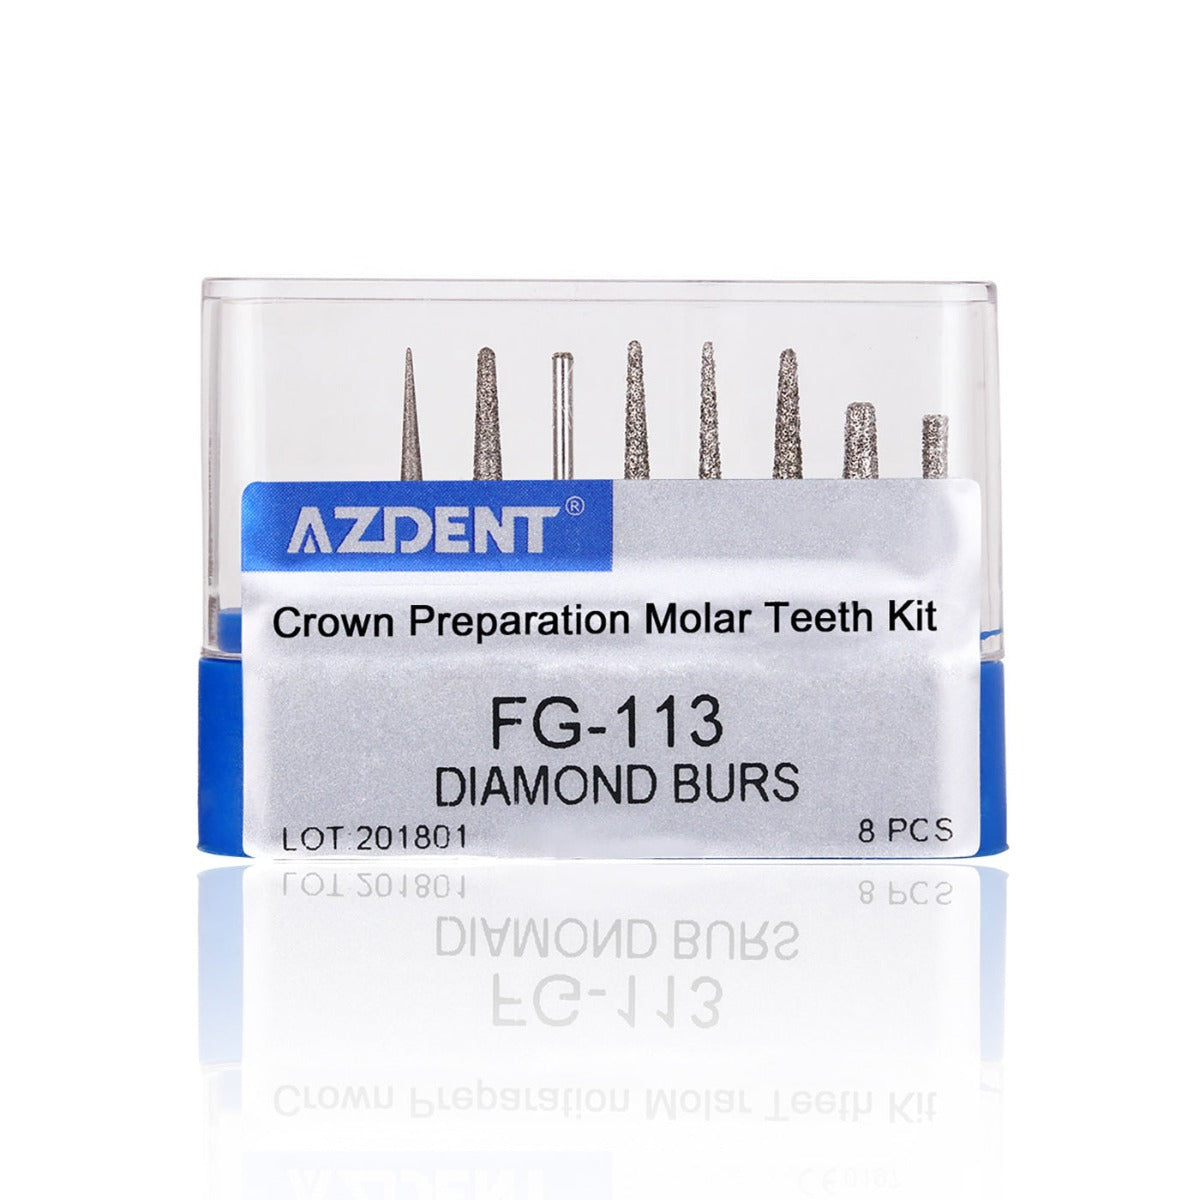 Dental Diamond Bur FG-113 Crown Preparation Molar Teeth Kit 8pcs/Kit - pairaydental.com